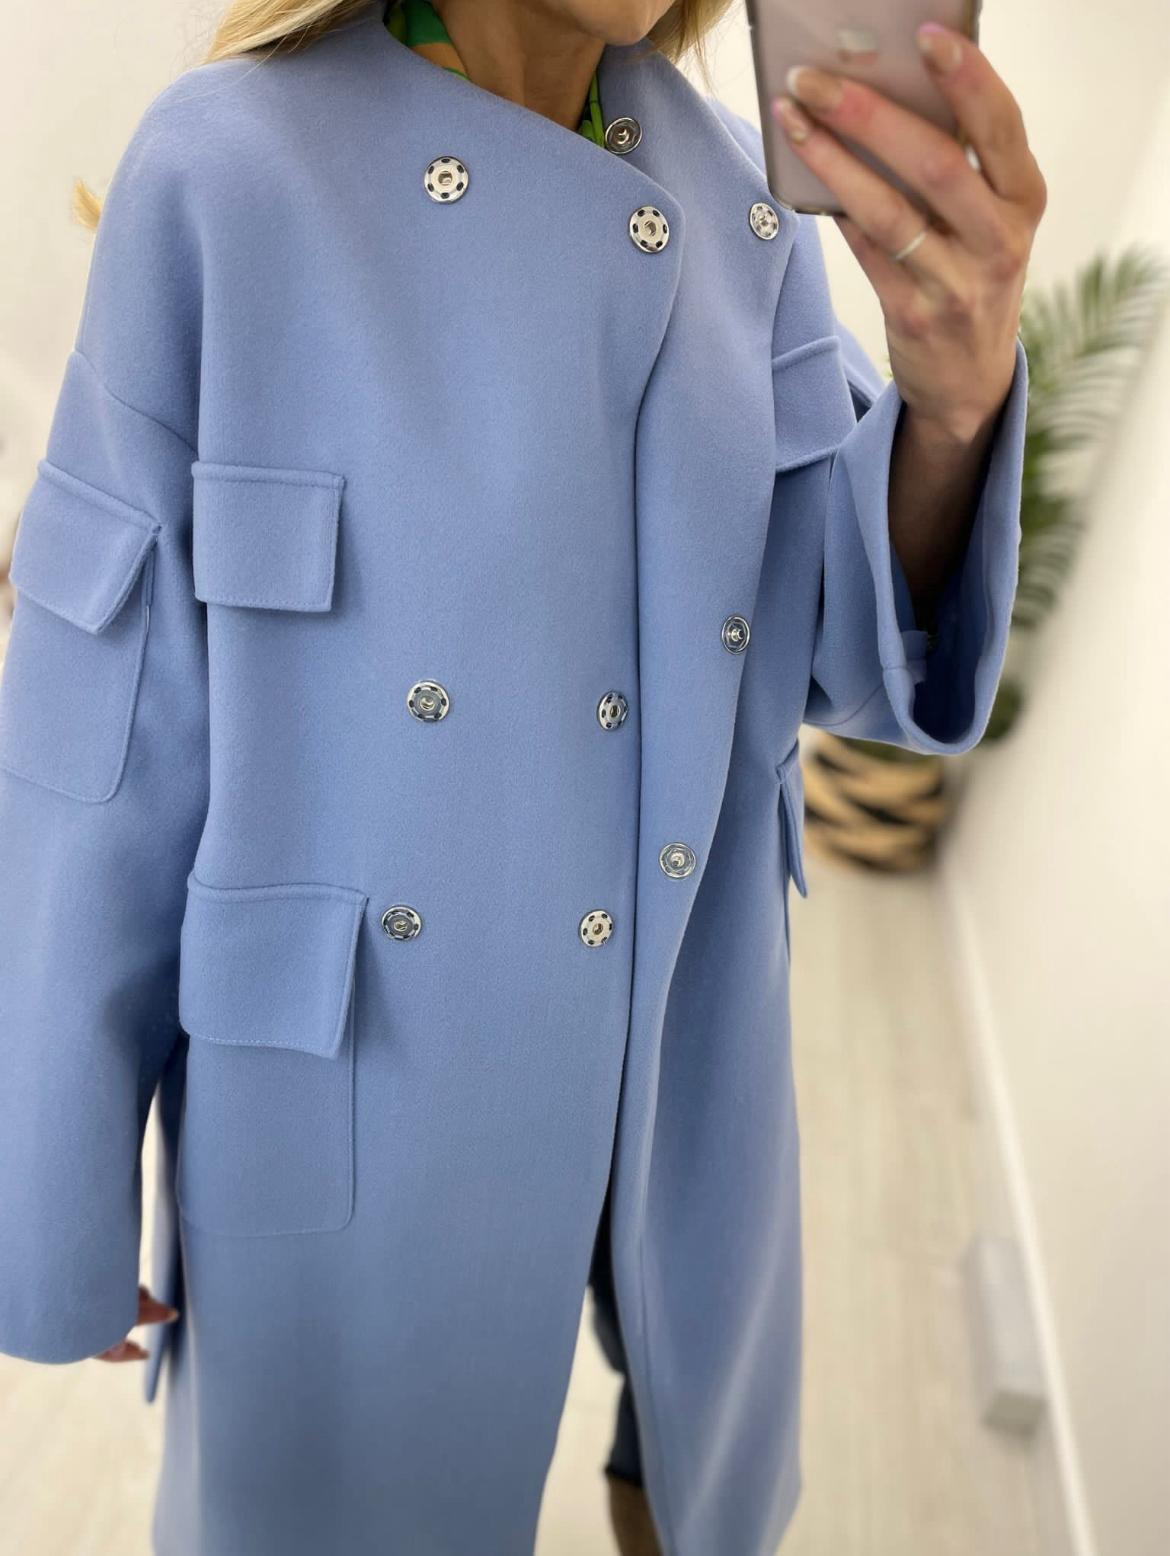 Kyla Long Coat-Mid Blue